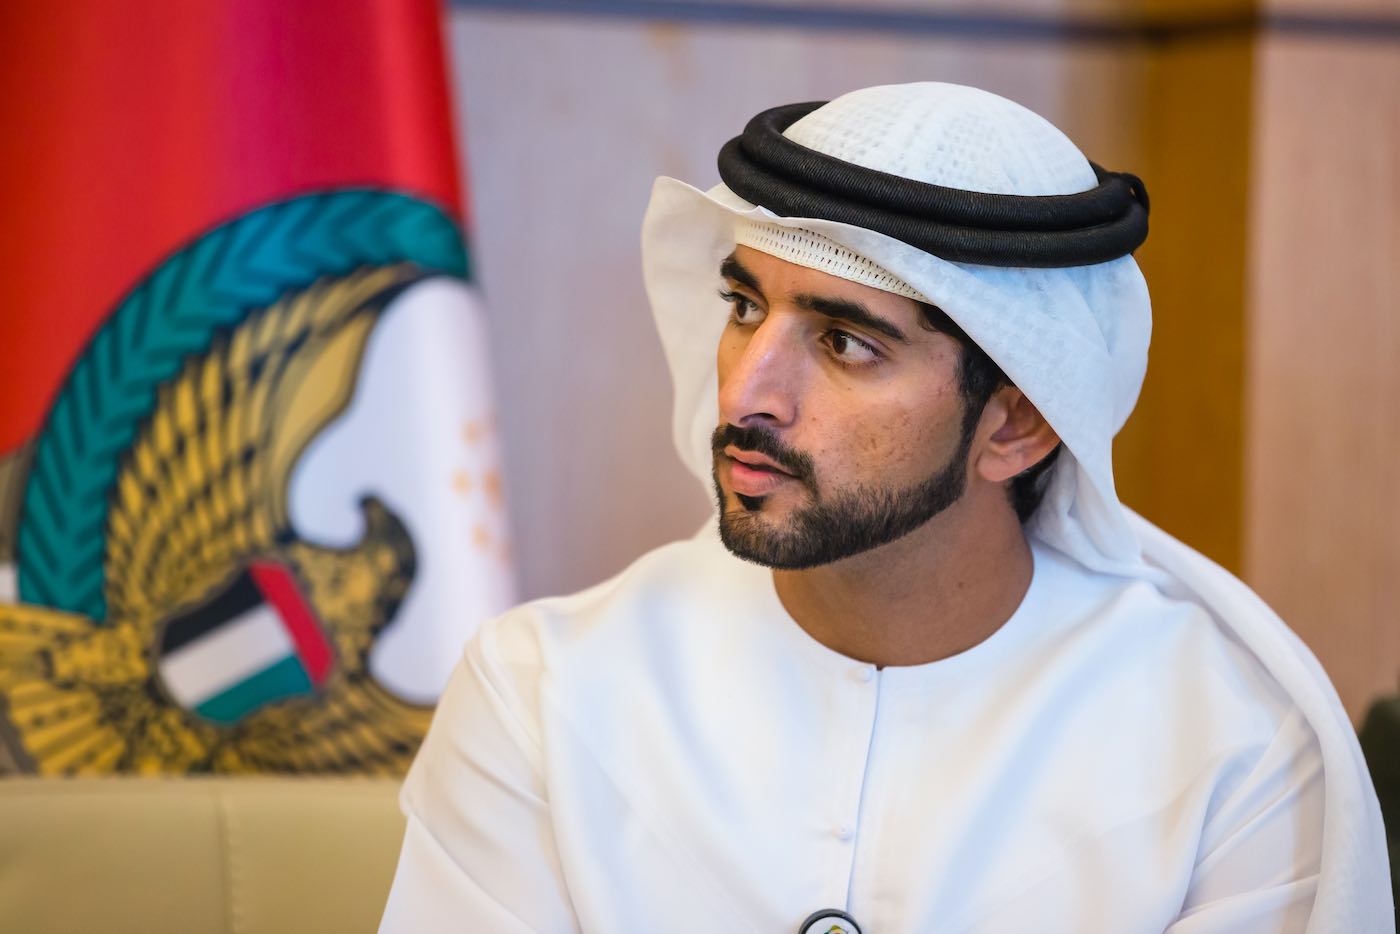 Cómo gasta su fortuna de 400 millones de dólares el Príncipe de Dubái